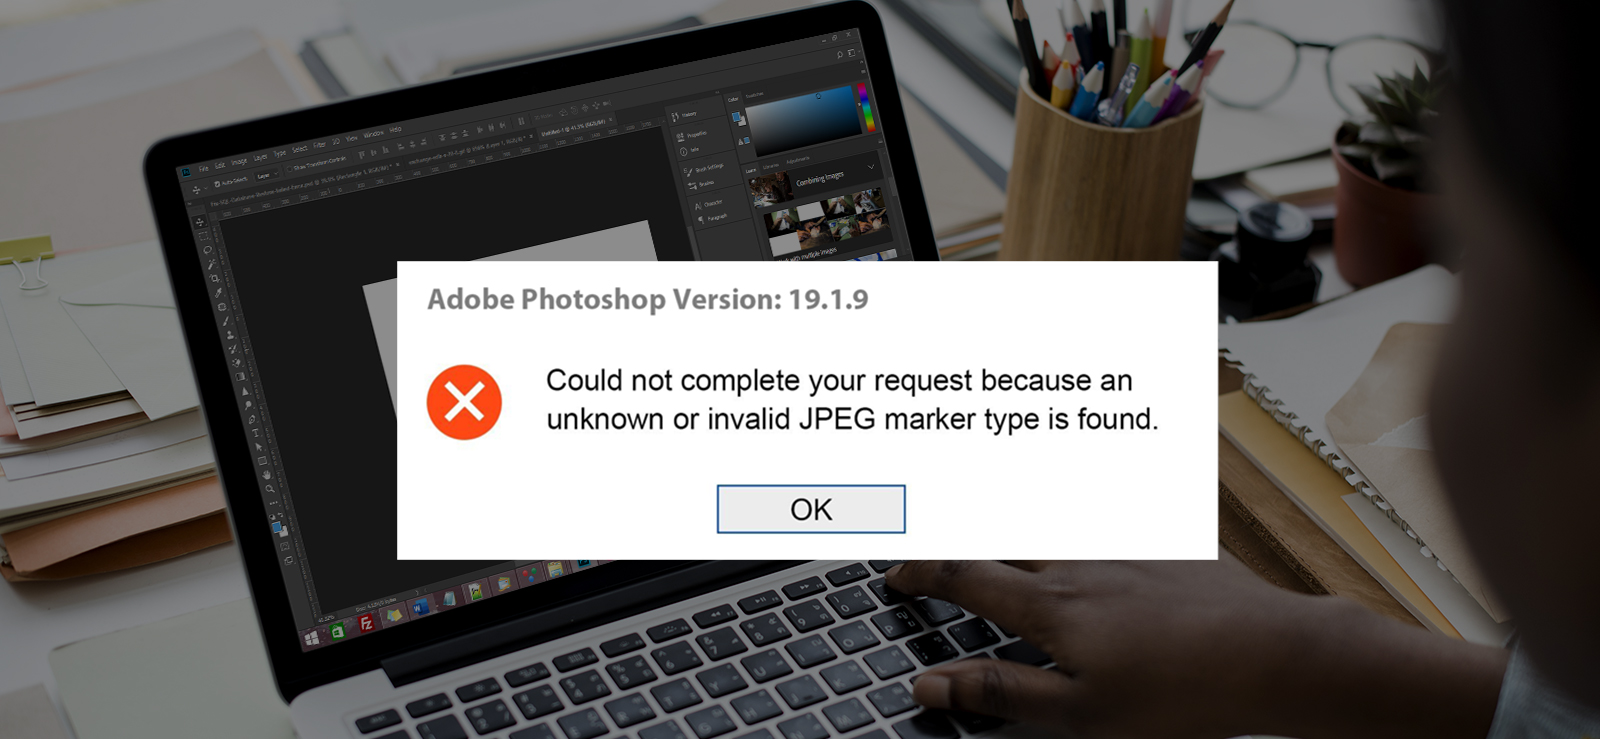 Ways to Fix Unknown JPEG Format Error in Photoshop